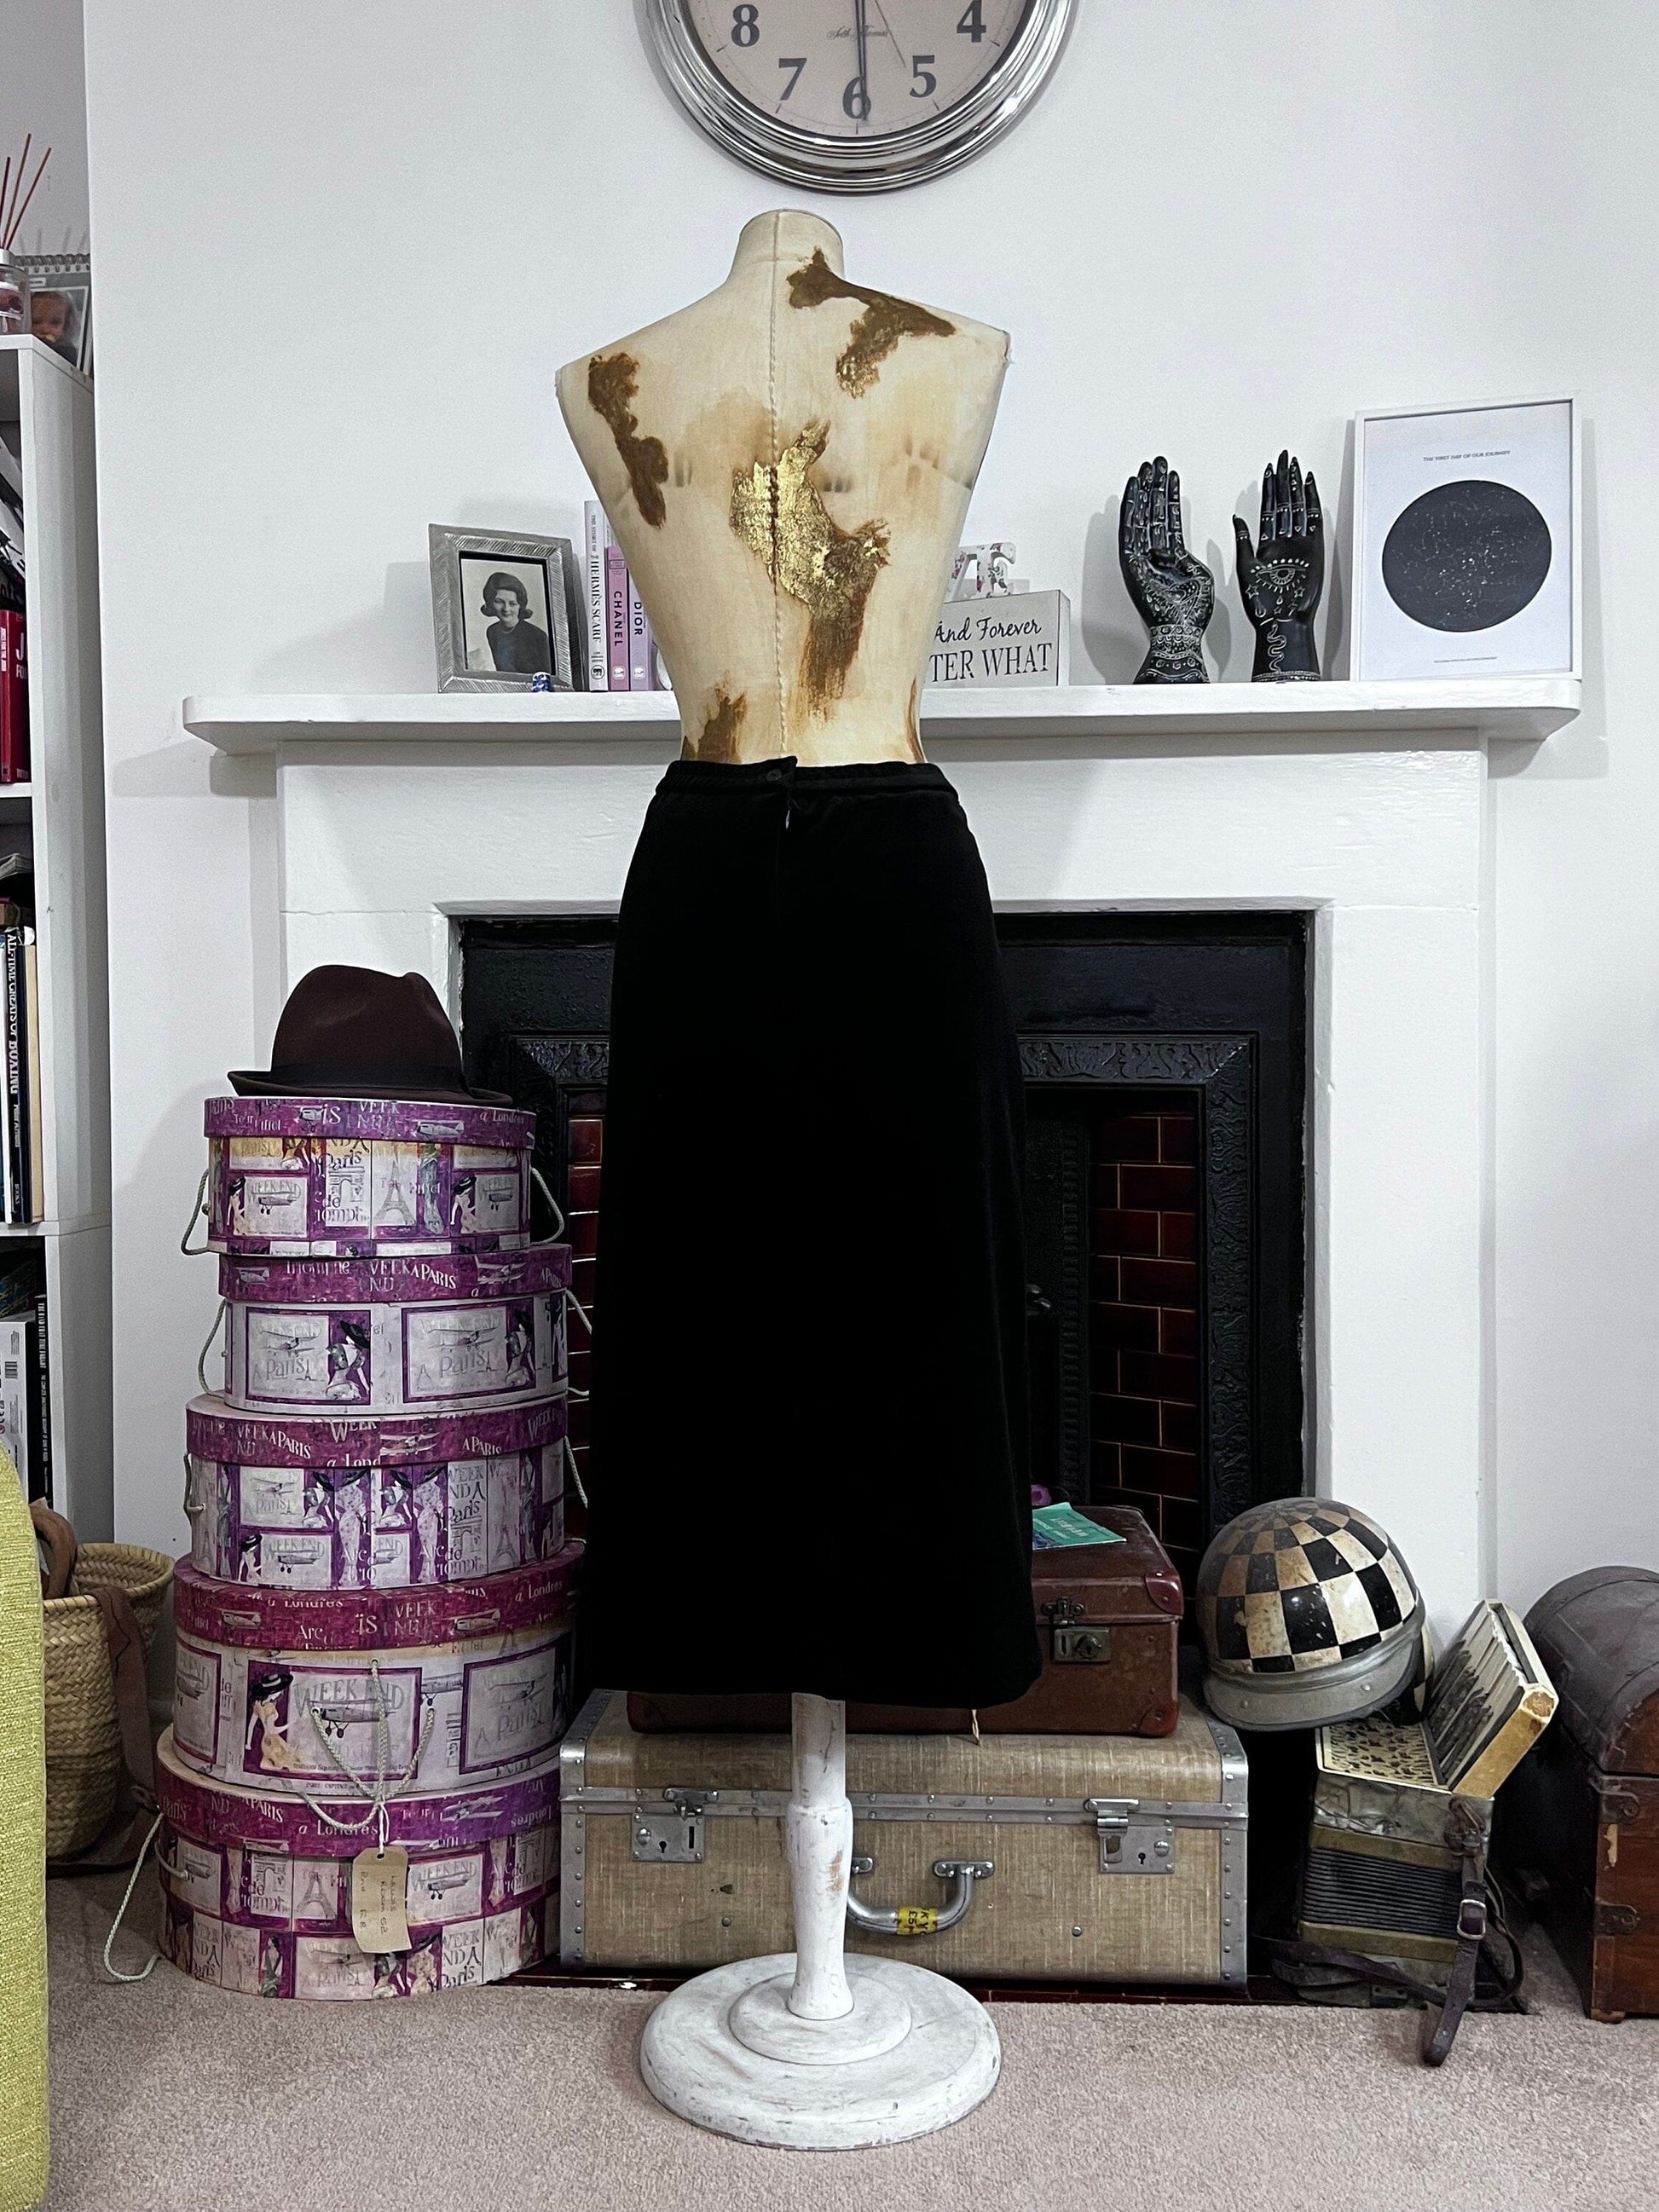 Vintage Velvet Skirt Midi Length Pencil Skirt Black, Vintage Bkack mid calf skirt, vintage pencil skirt, black skirt, velvet vintage skirt